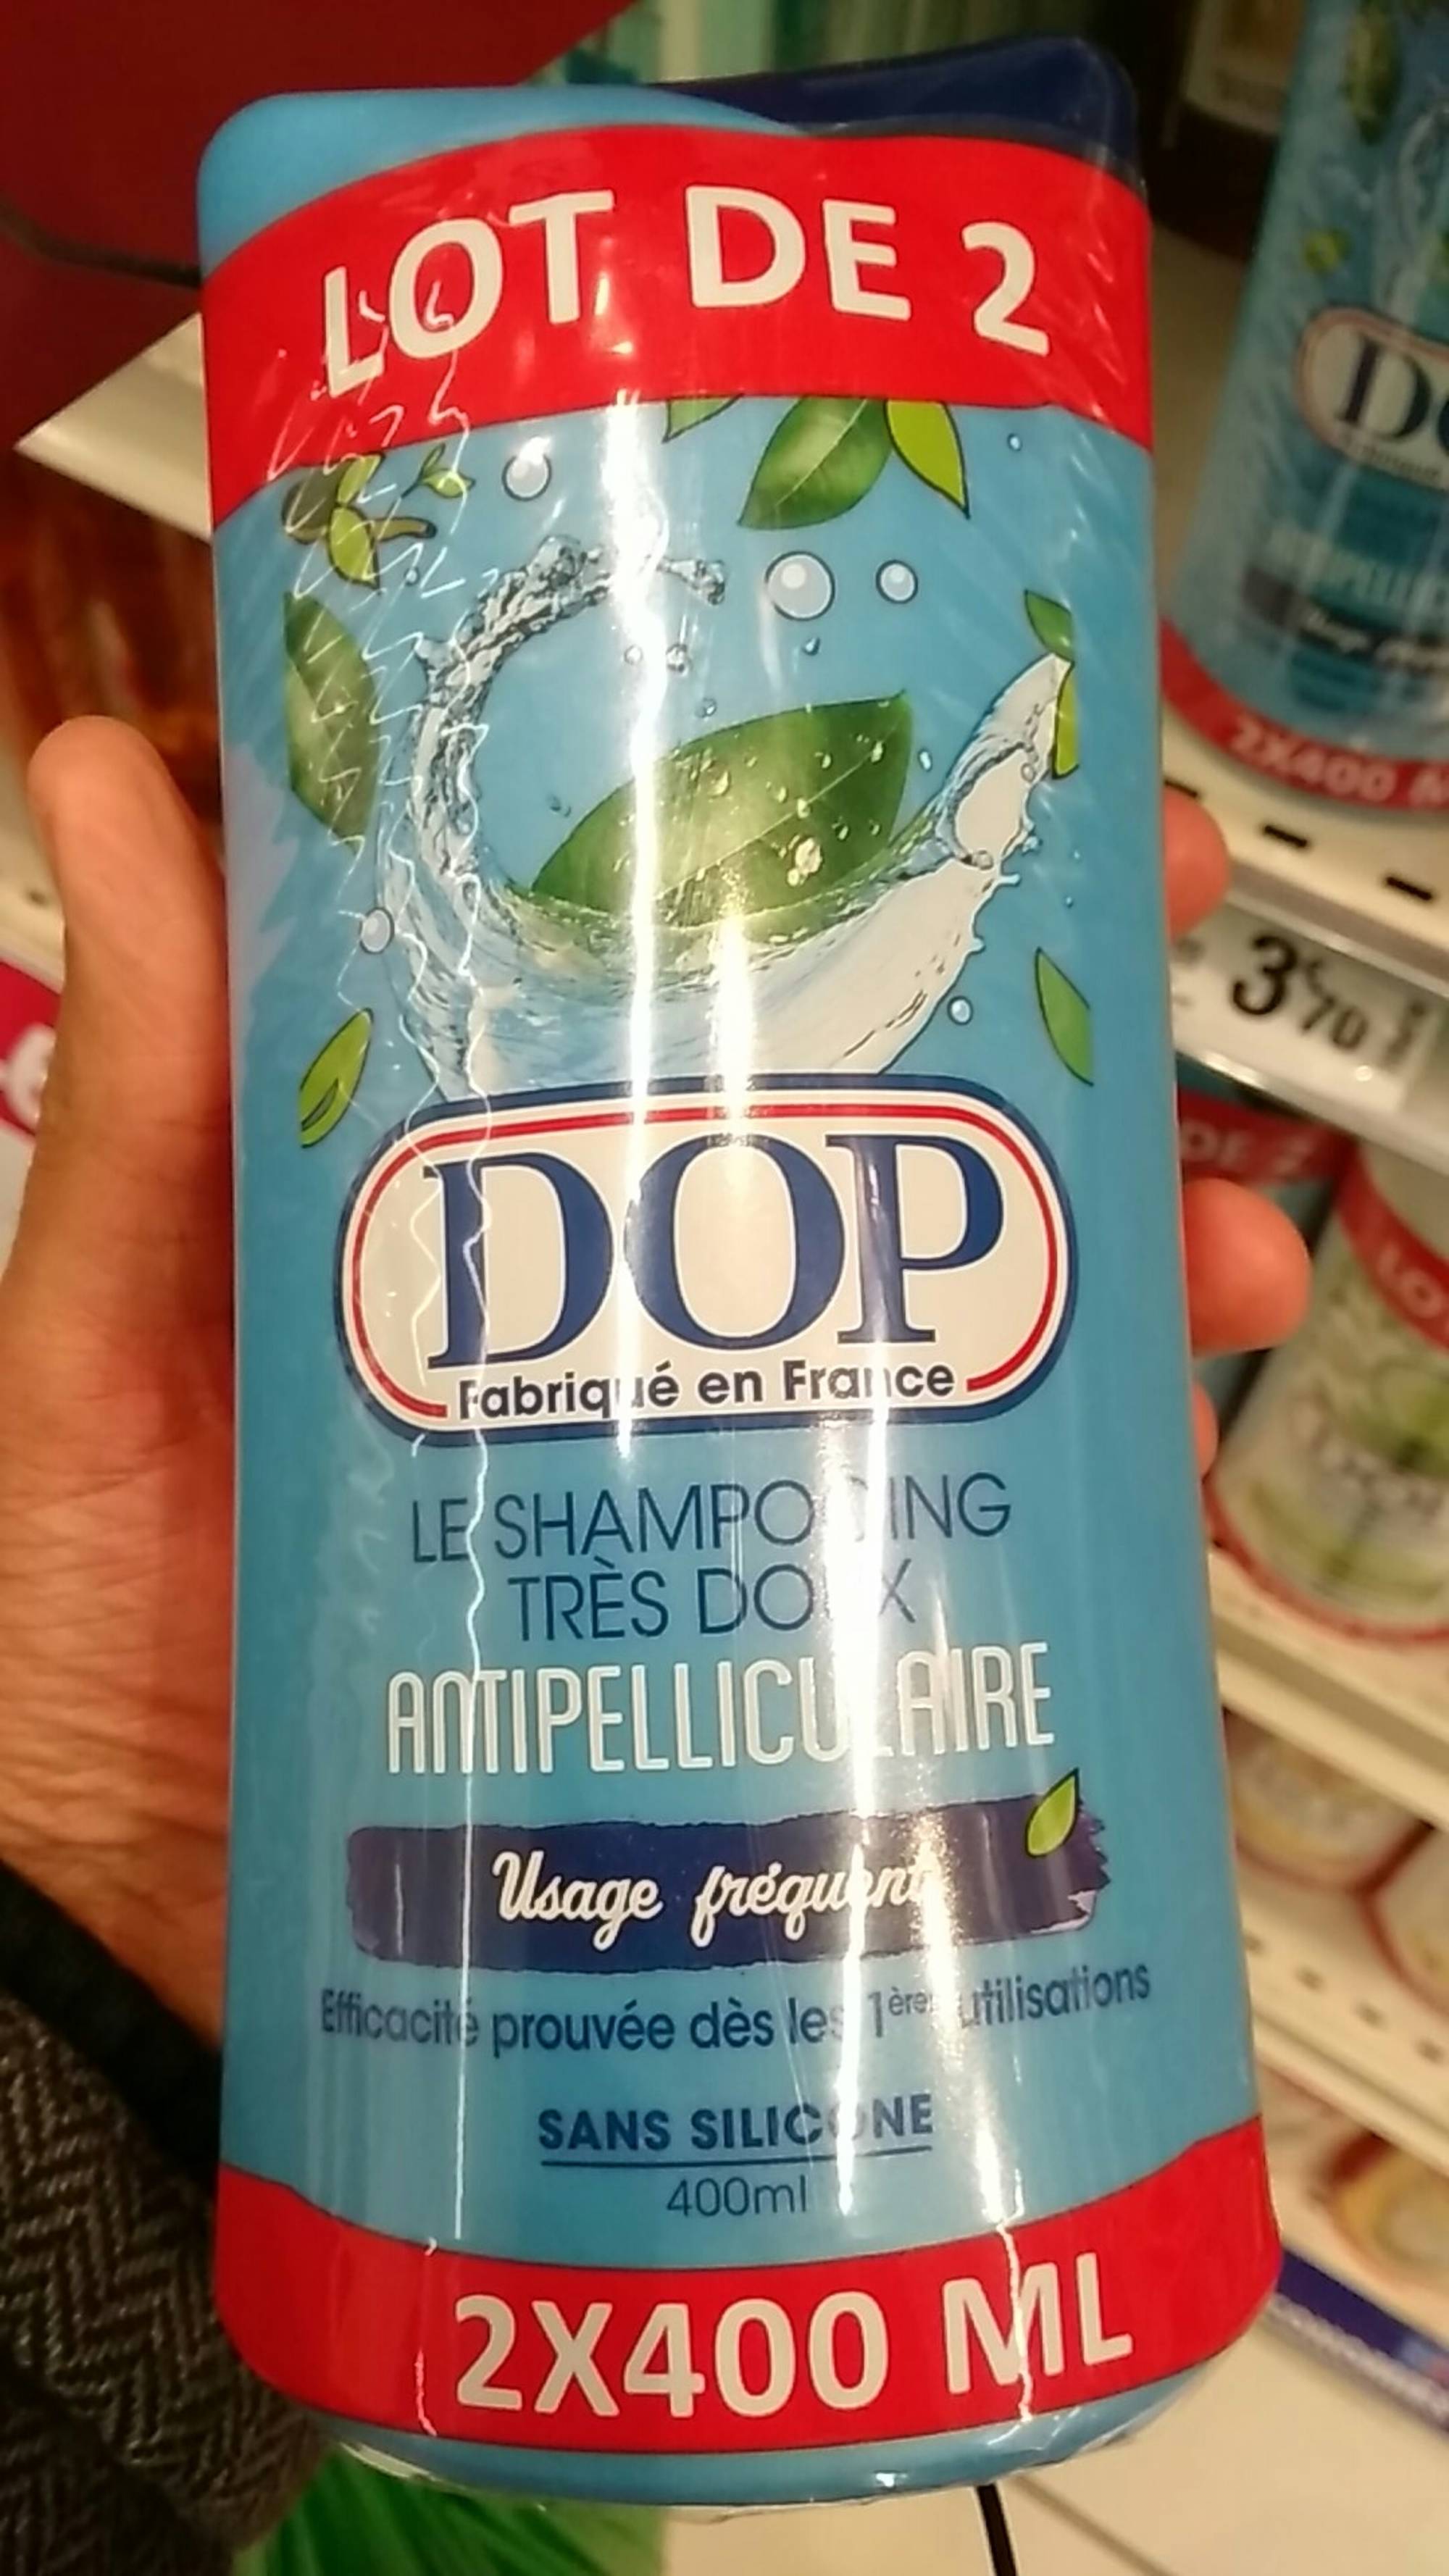 DOP - Le shampooing très doux antipelliculaire